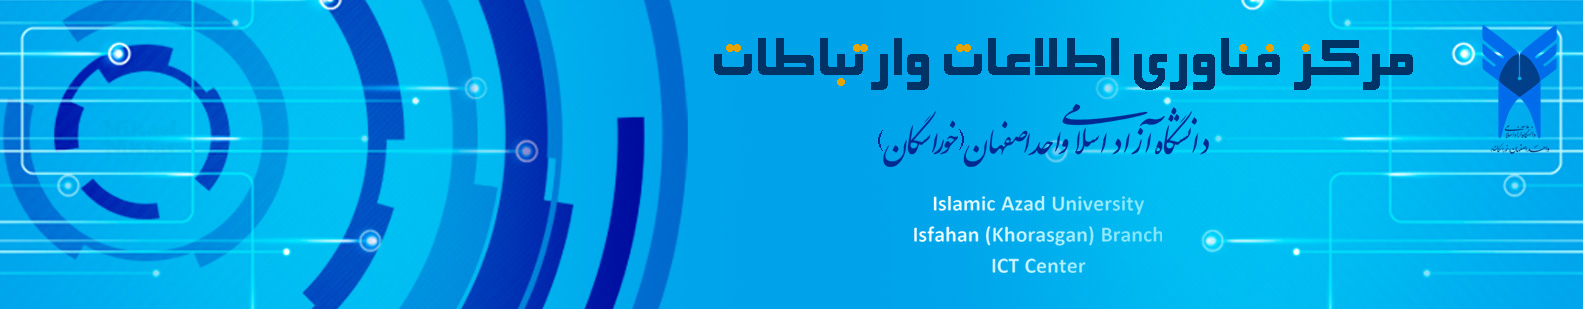 مرکز فناوری اطلاعات دانشگاه آزاد اسلامی واحد اصفهان(خوراسگان)